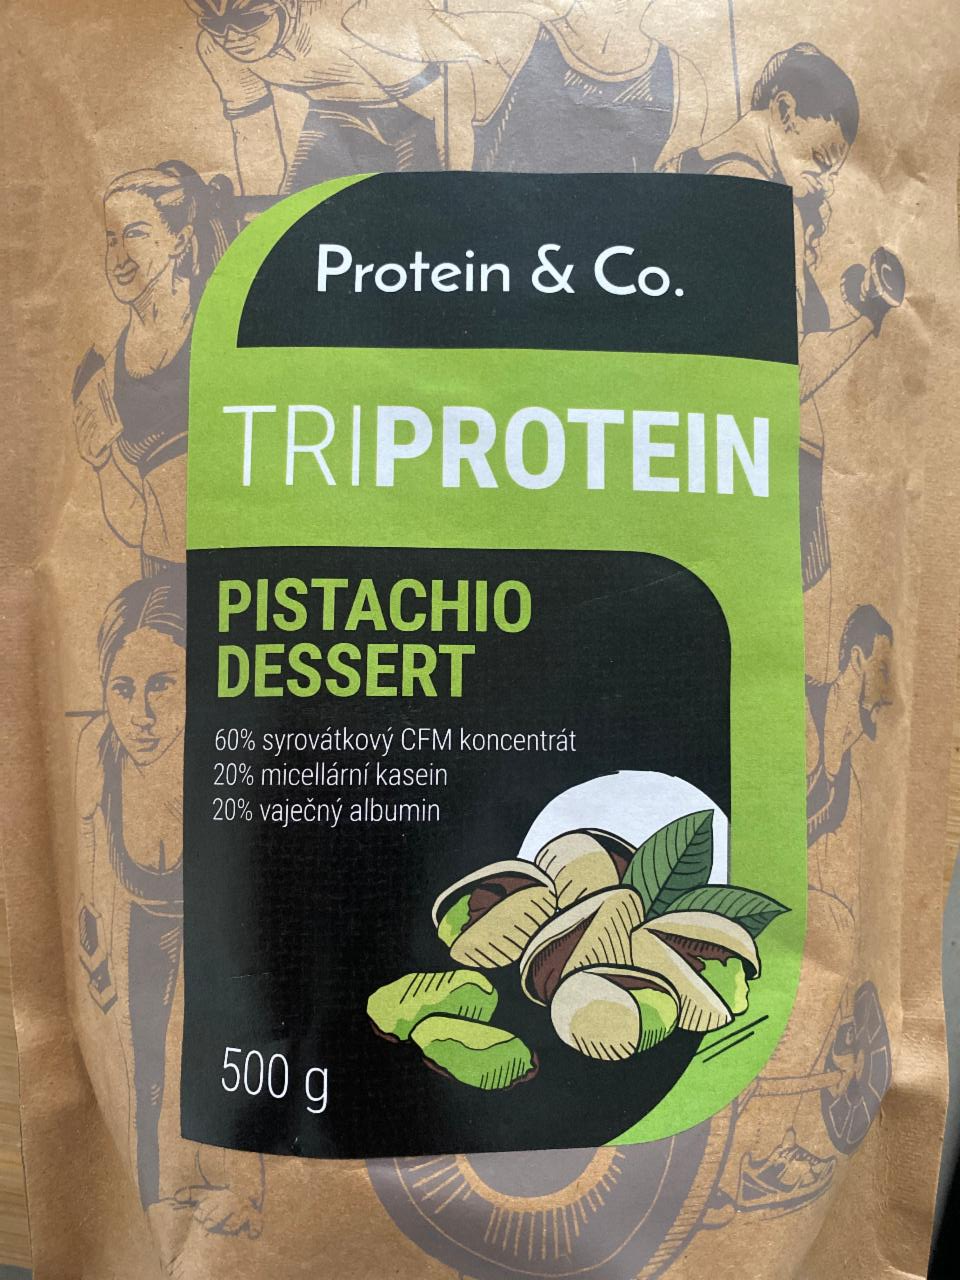 Fotografie - Triprotein Pistachio dessert Protein & Co.